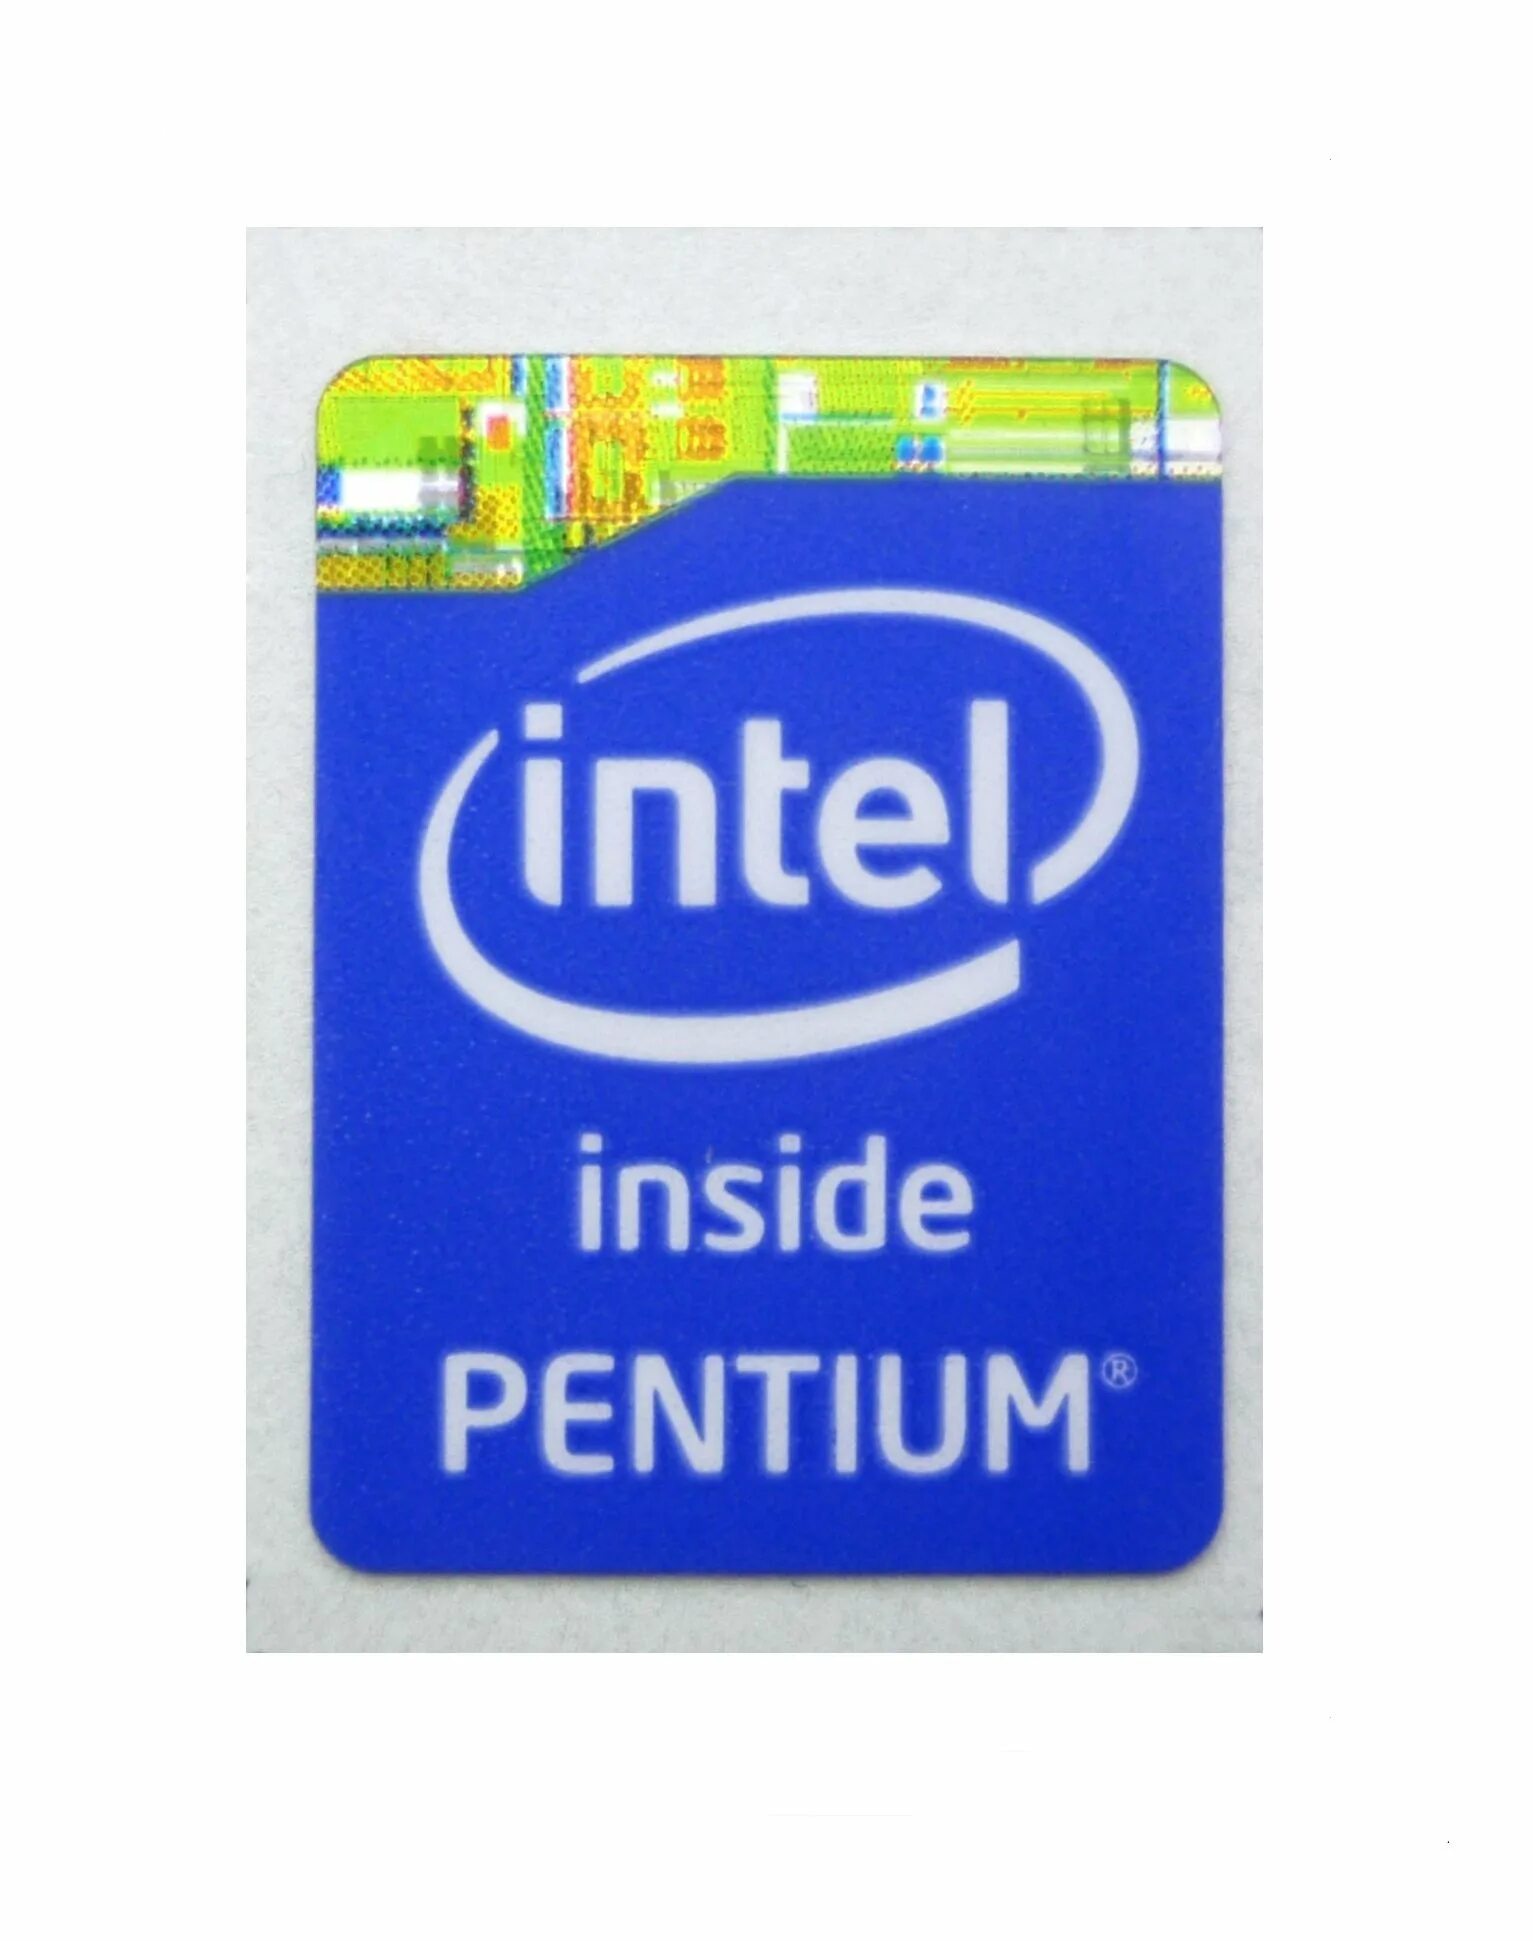 Наклейка Intel Core i7 inside. Intel Pentium 3 Xeon inside наклейка. Intel Core i5 inside наклейка. Процессор Intel Core i3 inside. Наклейки intel